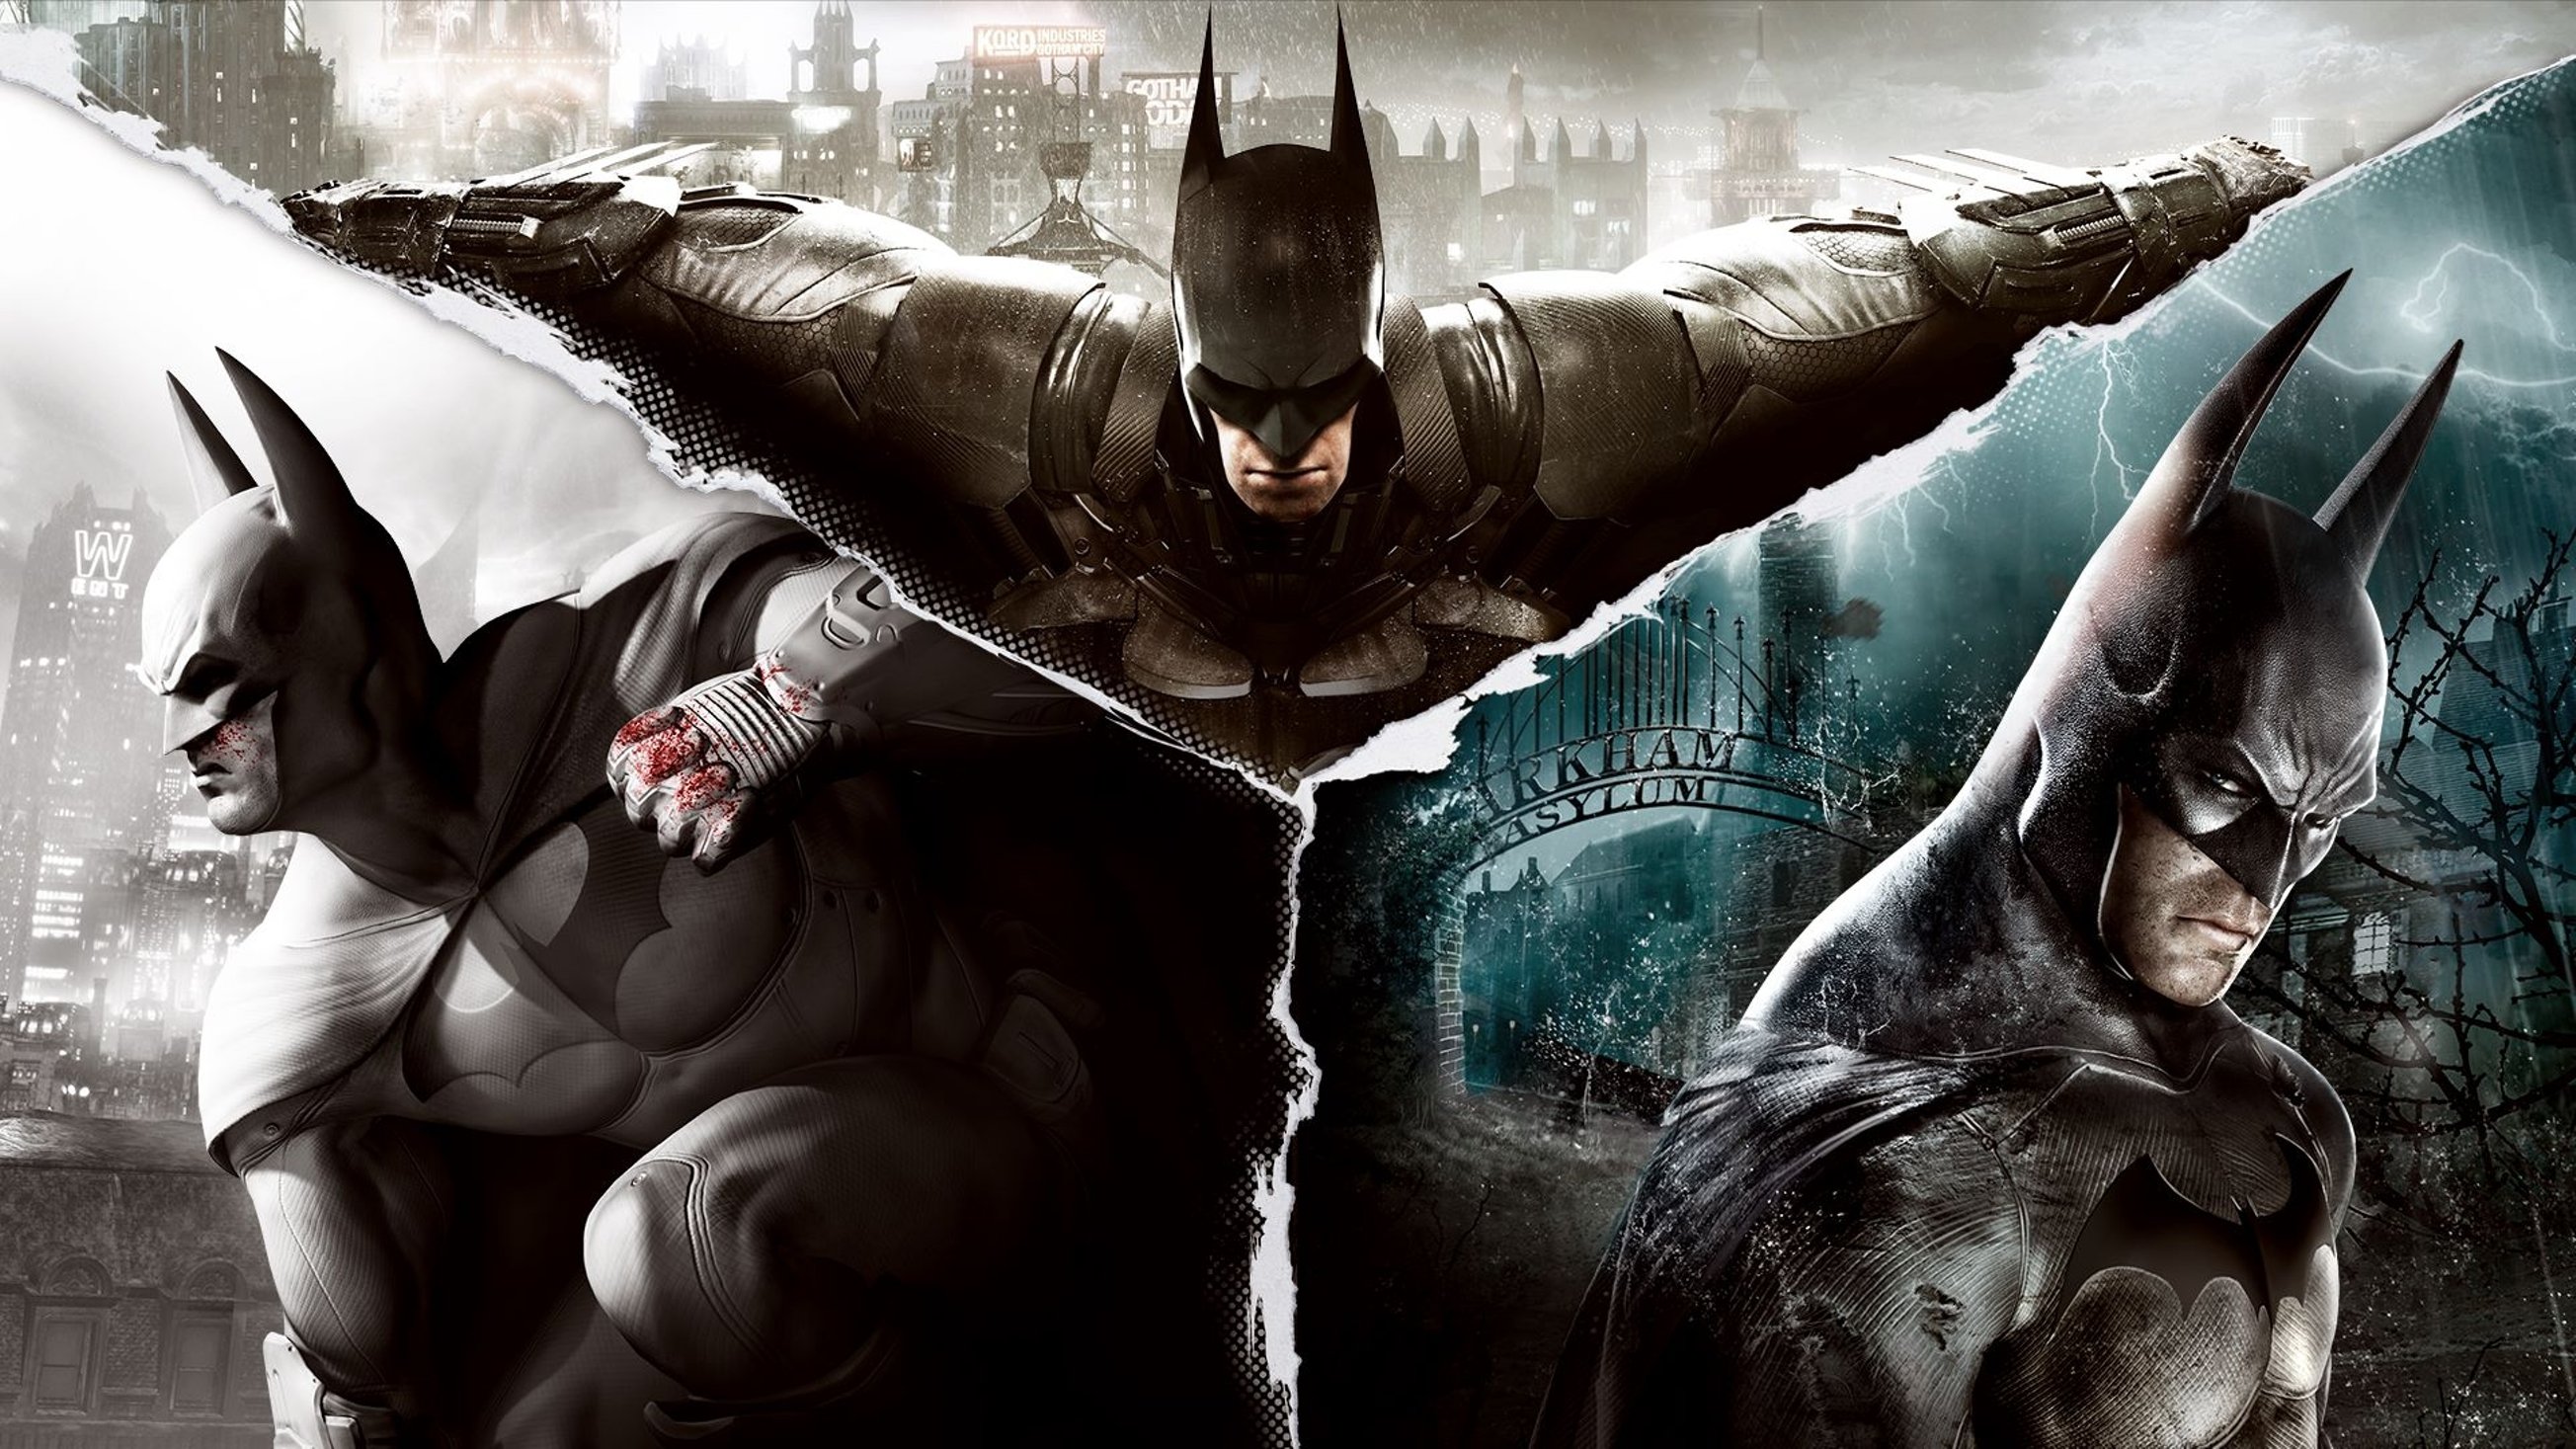 Скачать обои Бэтмен: Коллекция Аркхема на телефон бесплатно